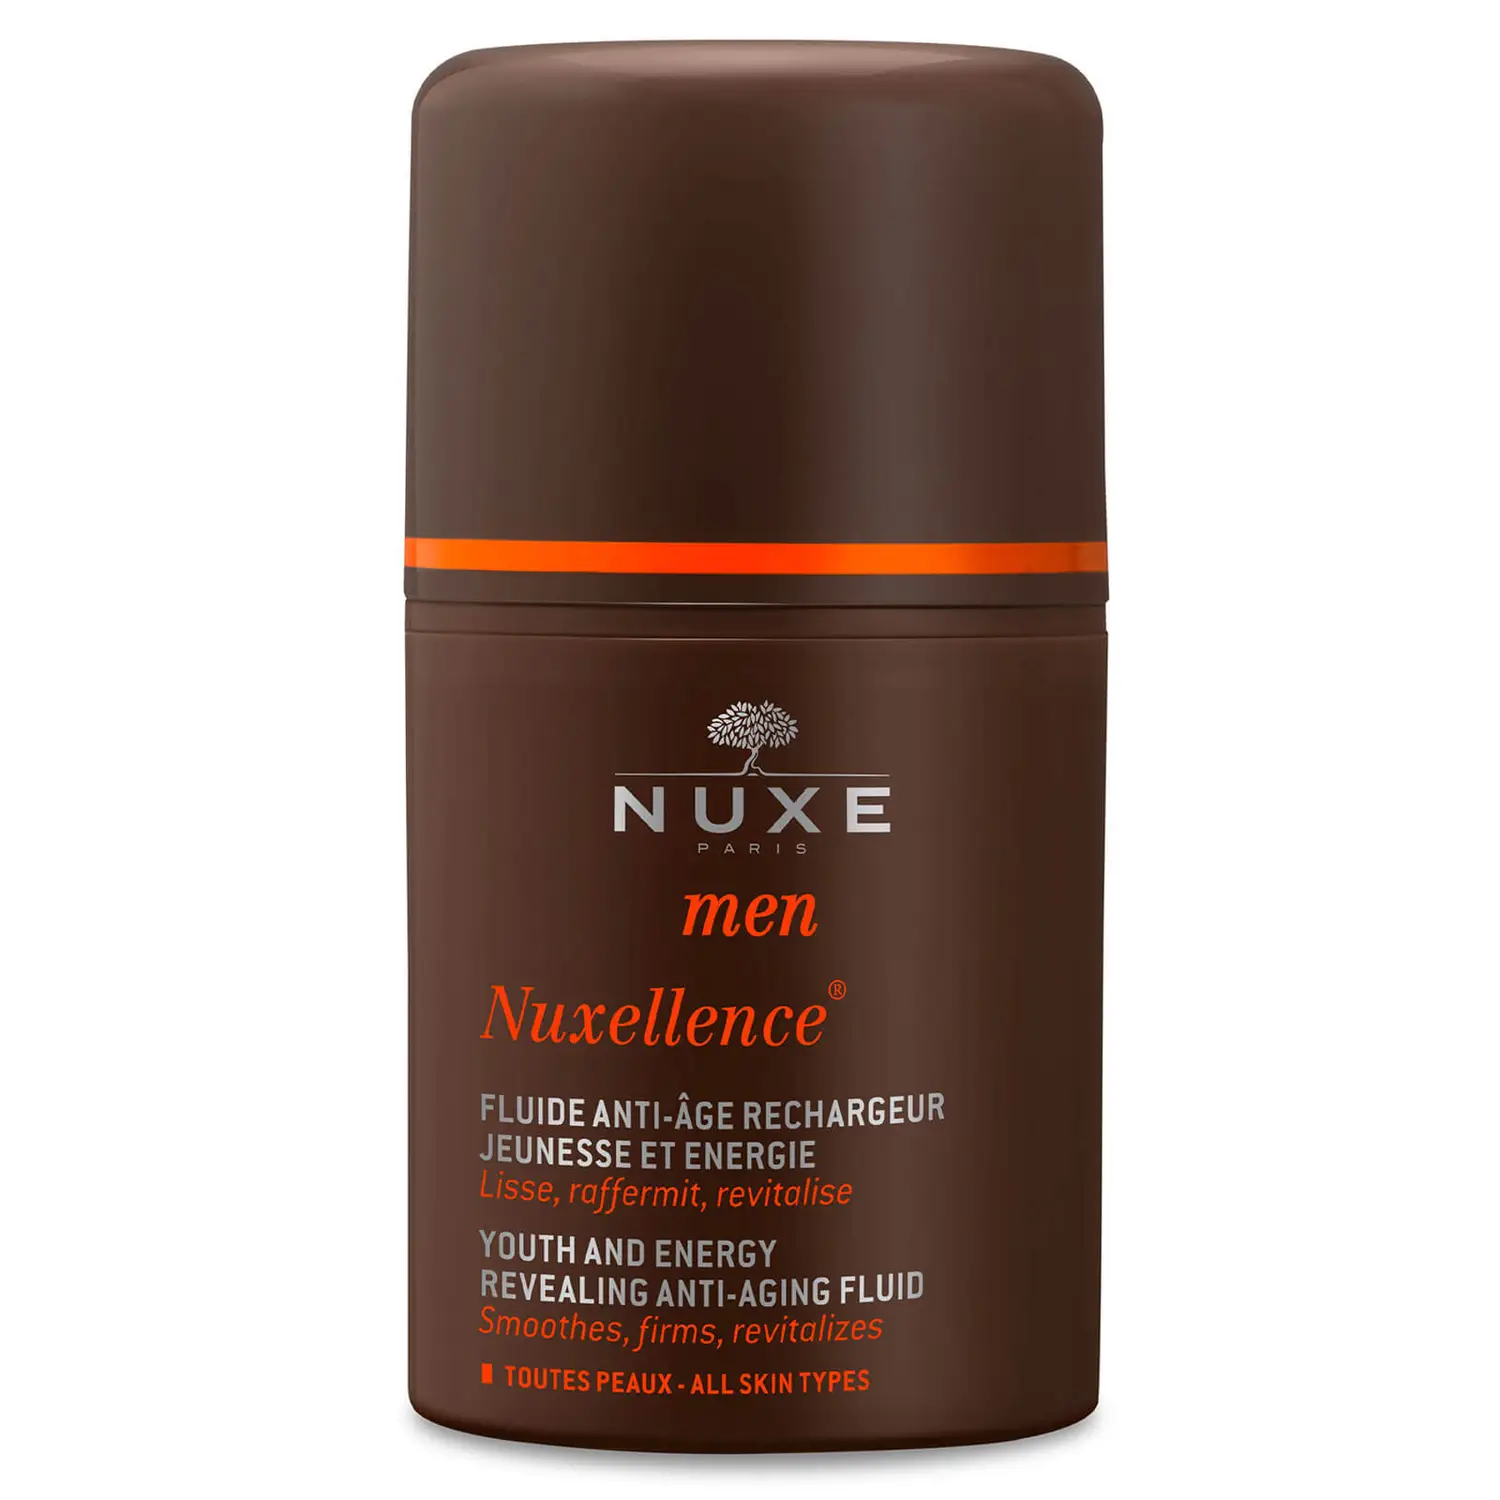 NUXE Men, Nuxellence 50 ml. Fluido antiedad restaurador - juventud y energía. Para todos los tipos de piel. Todas las edades. 91 % de ingredientes de origen natural